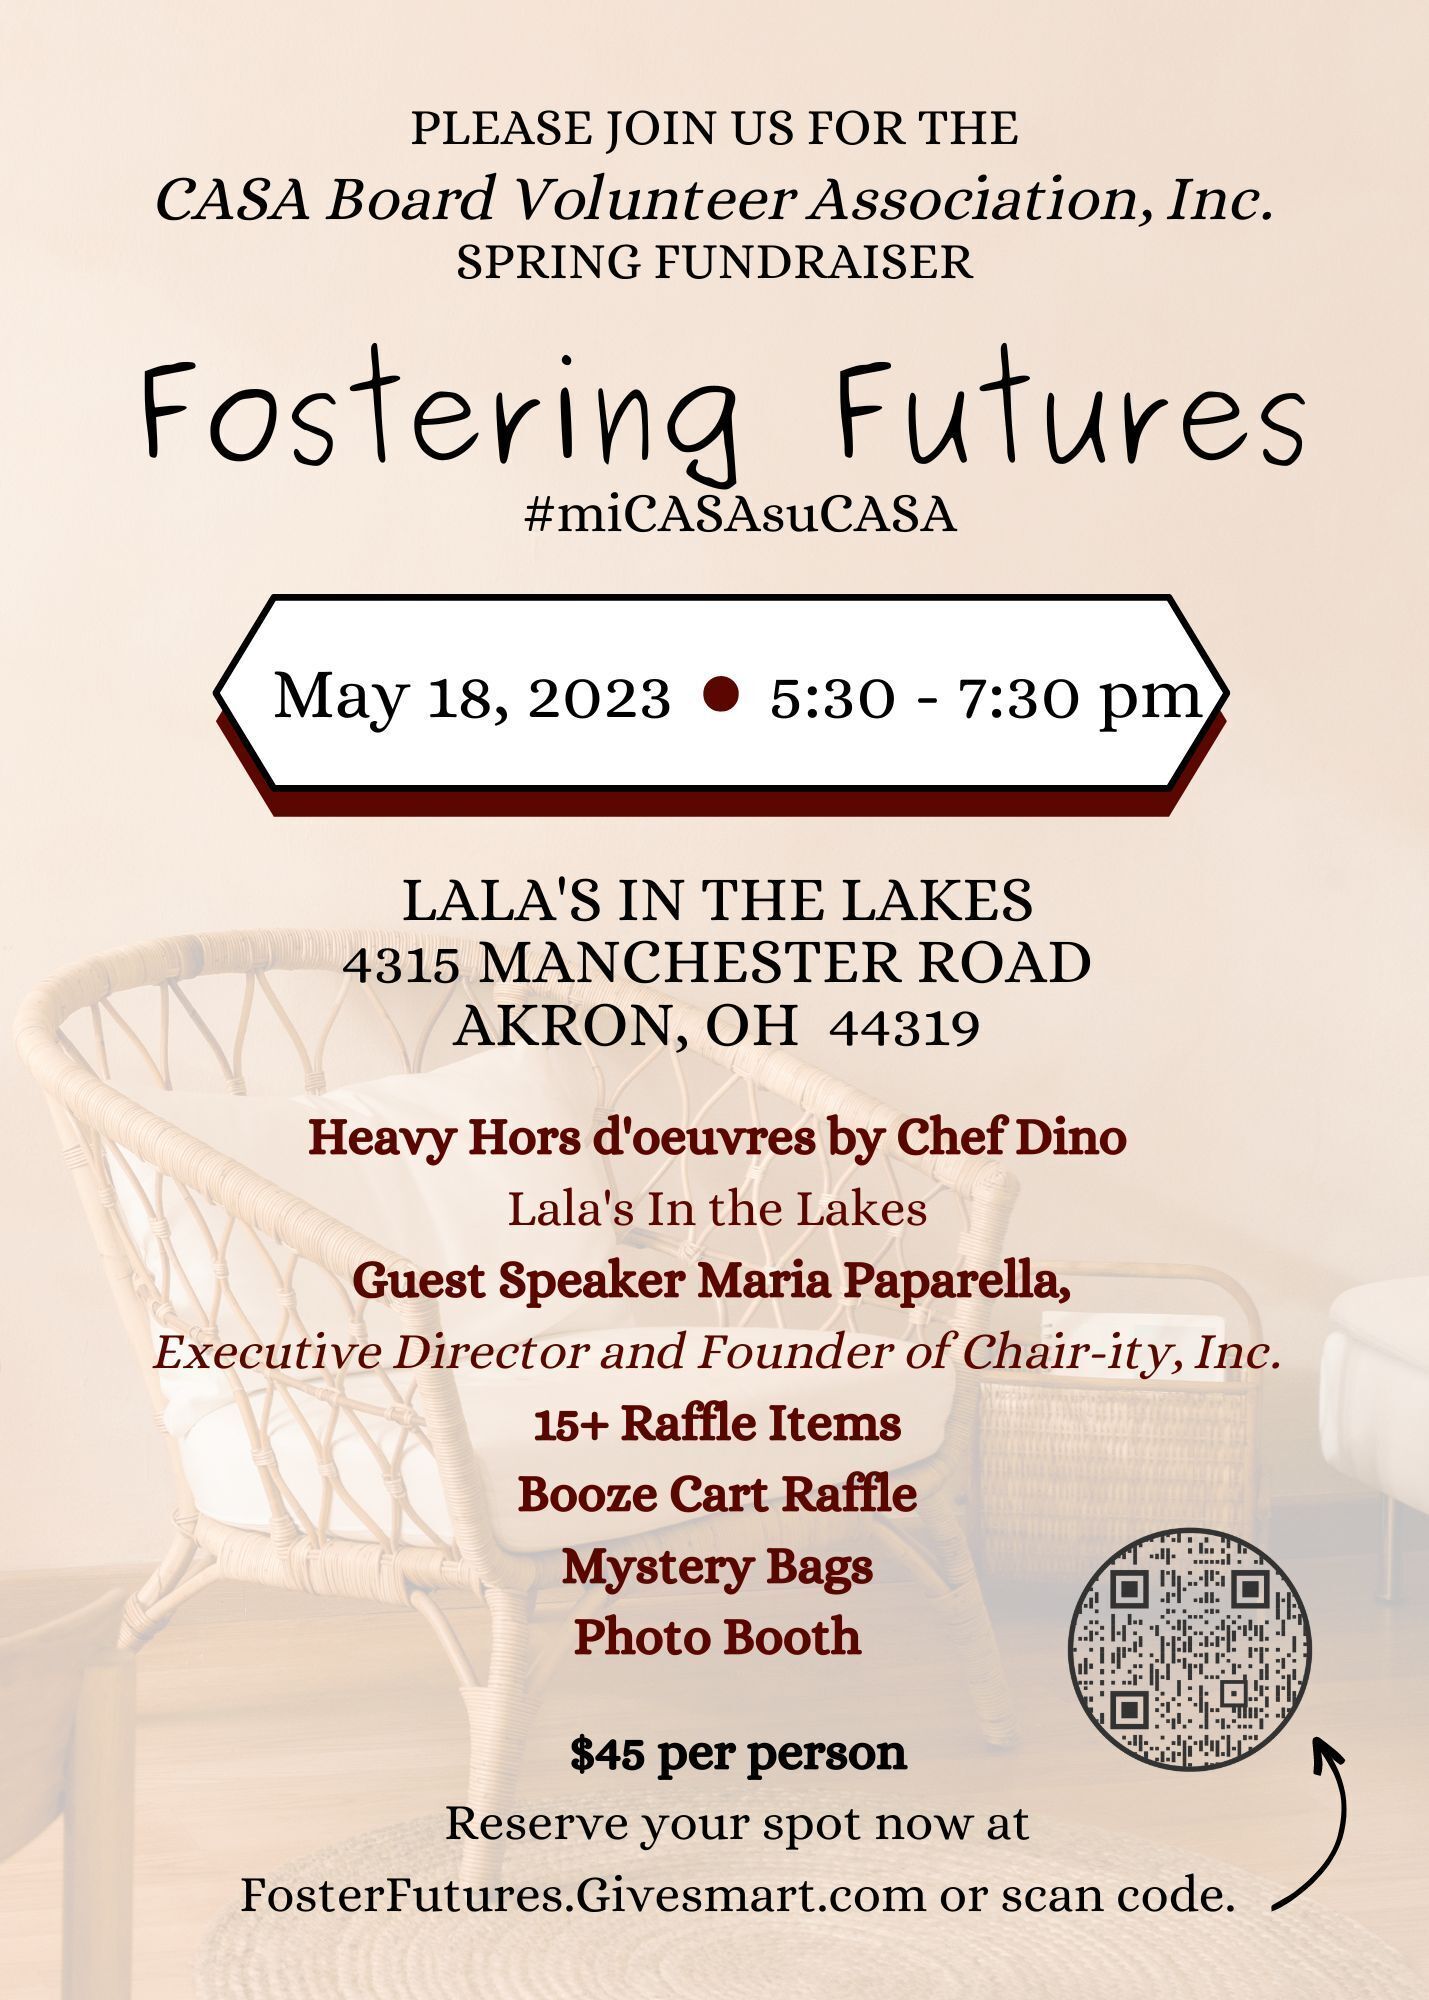 Fostering Futures - CASA Board Volunteer Association Inc. Spring Fundraiser